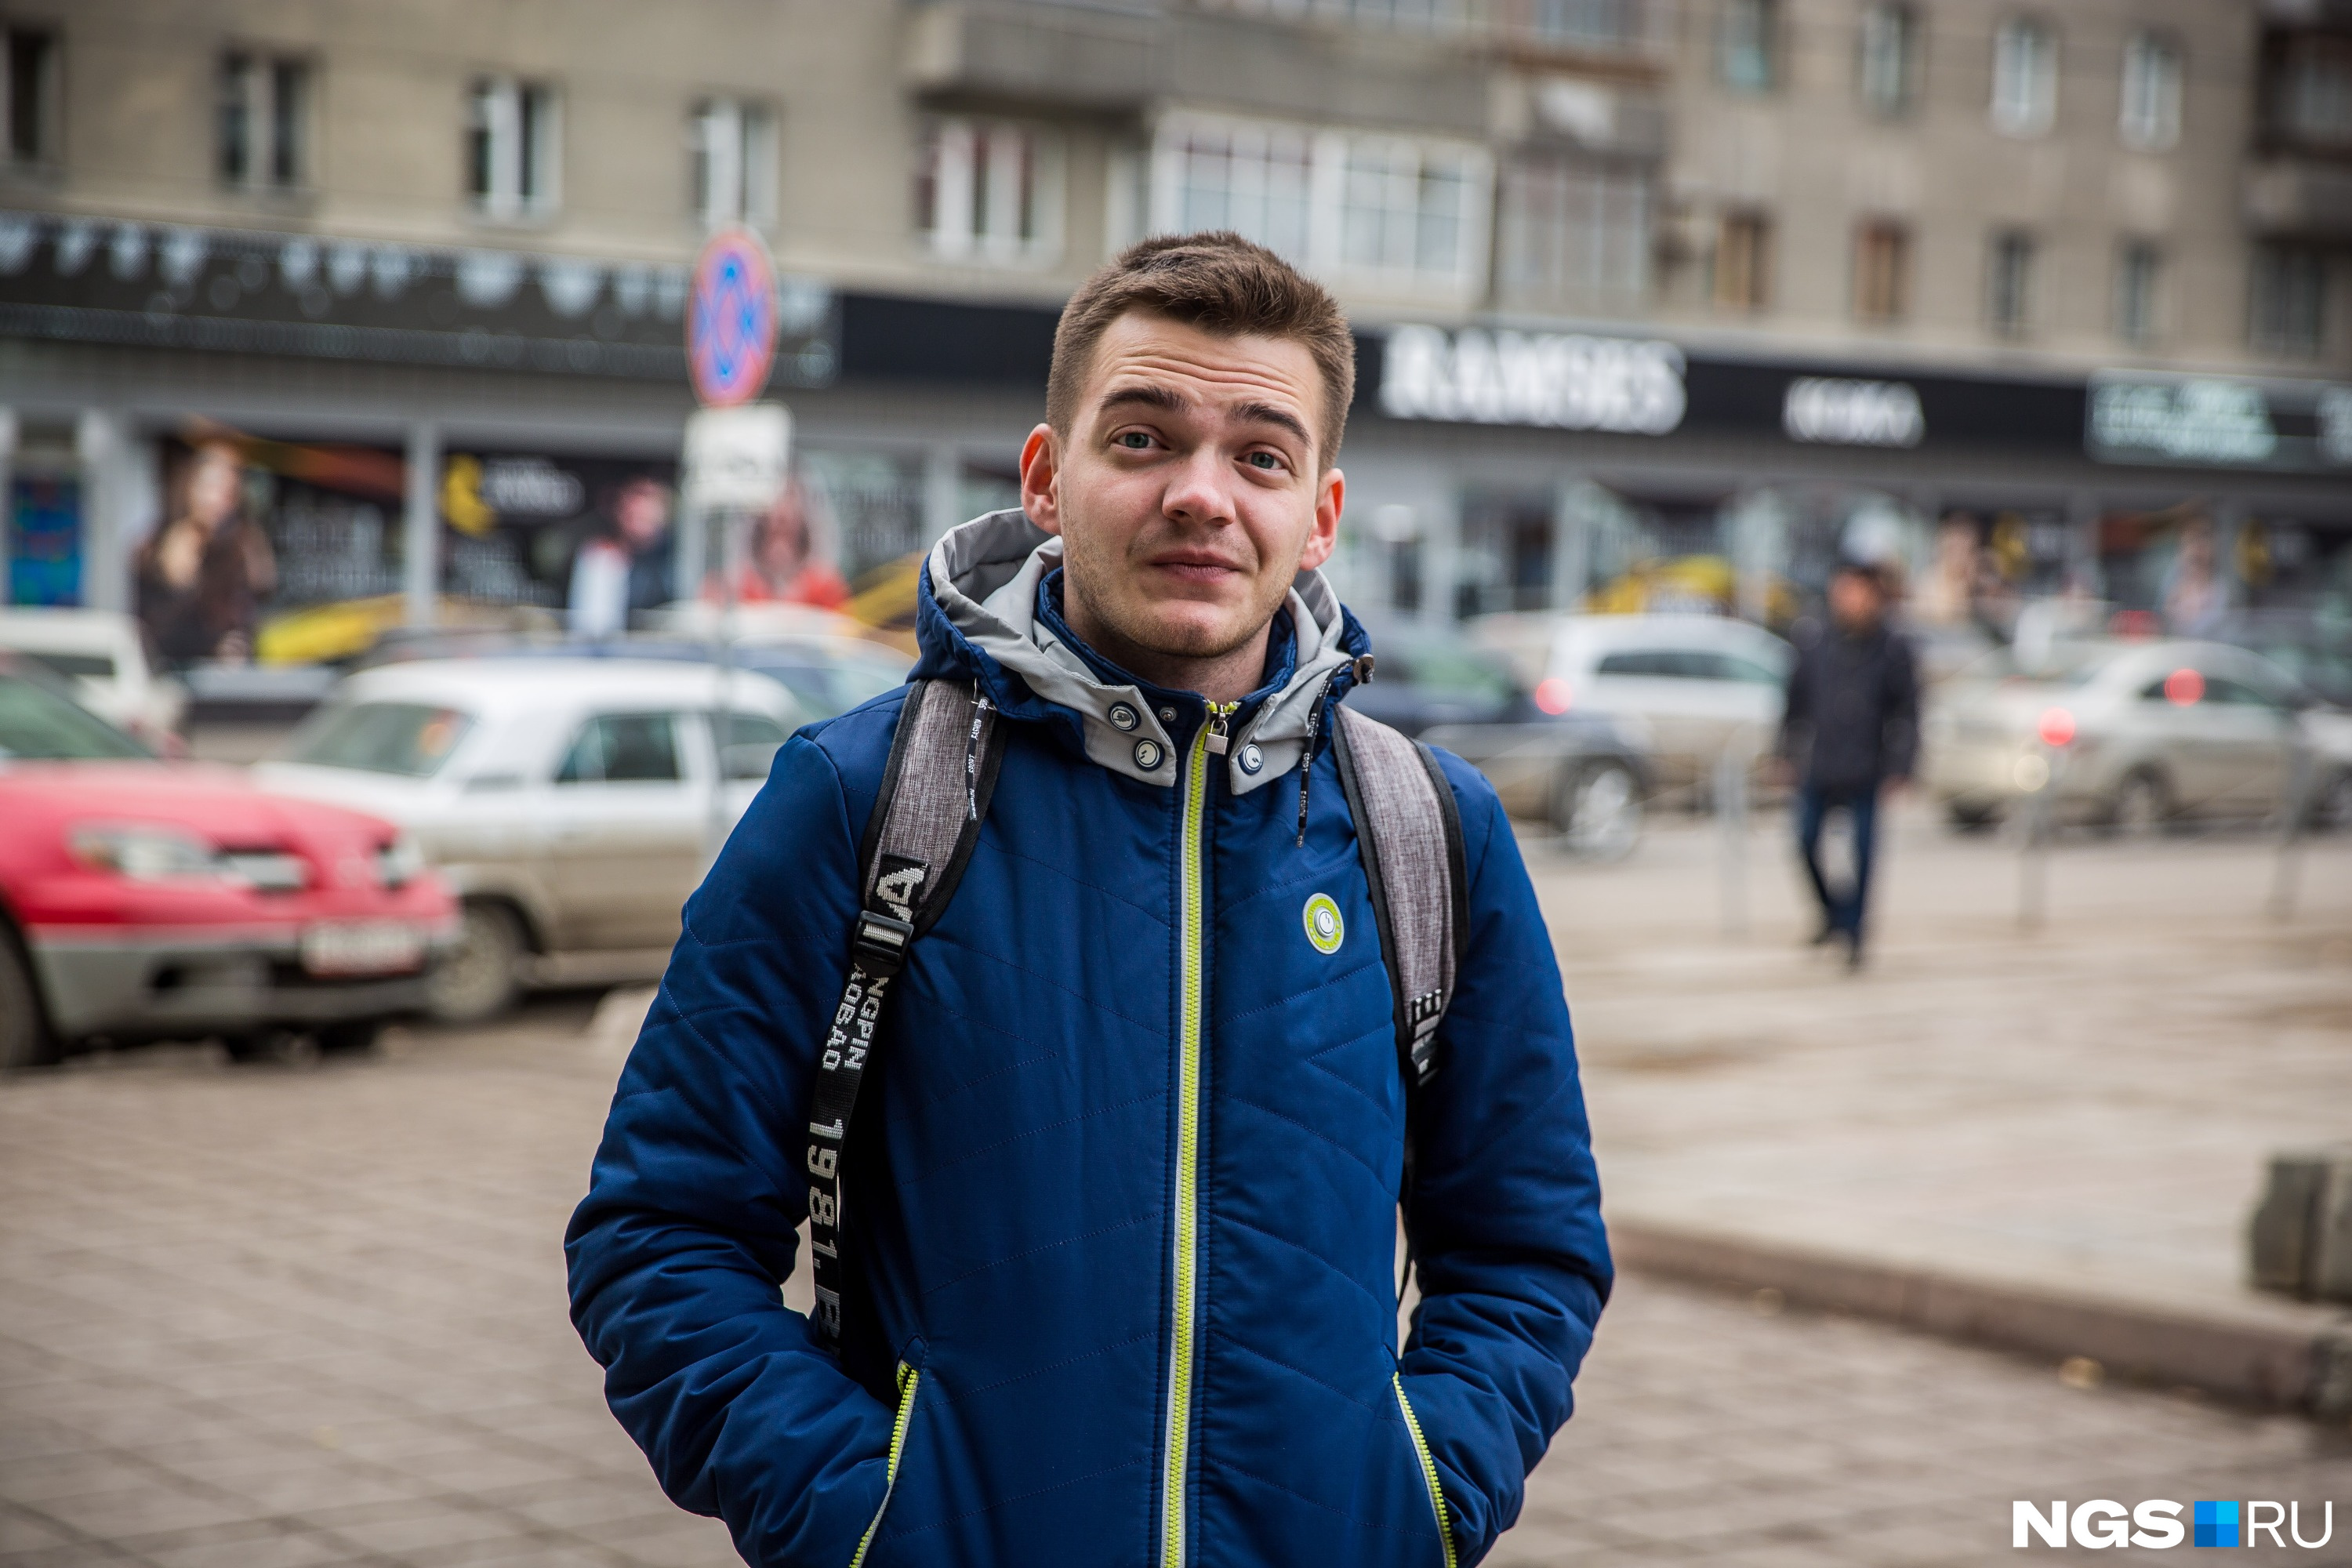 Андрей, 25 лет, работает в банке